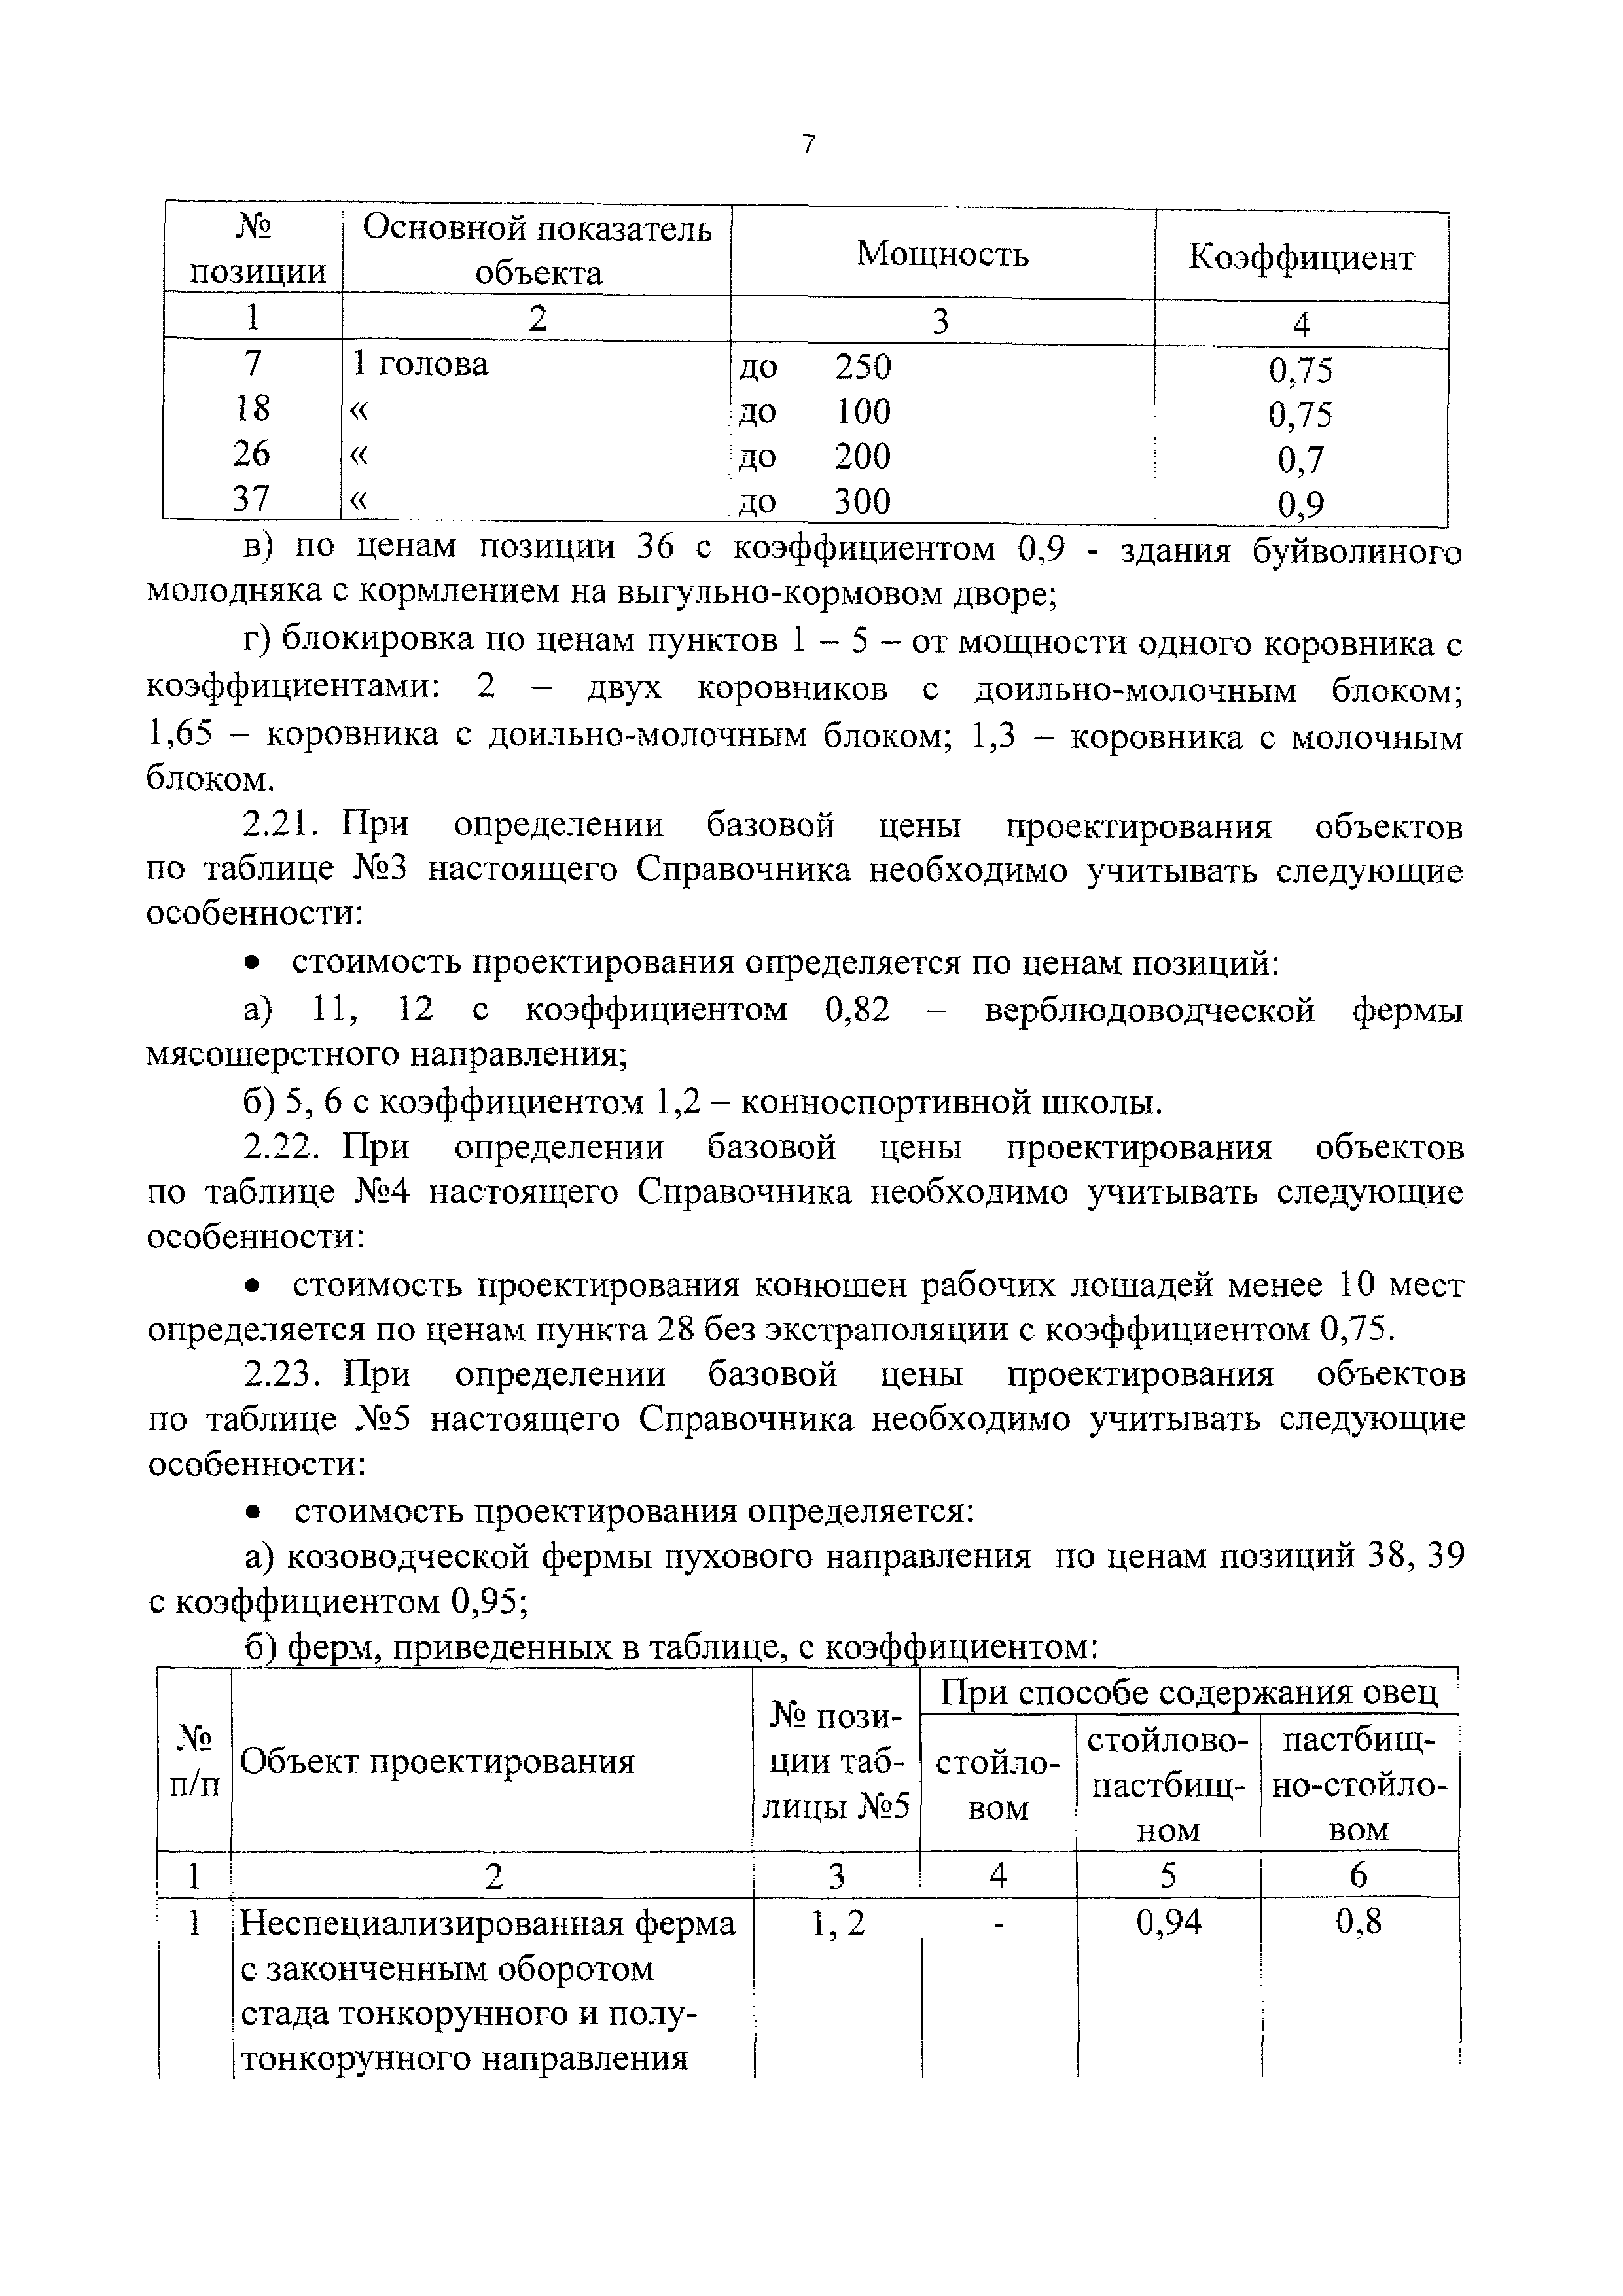 СБЦП 81-2001-11